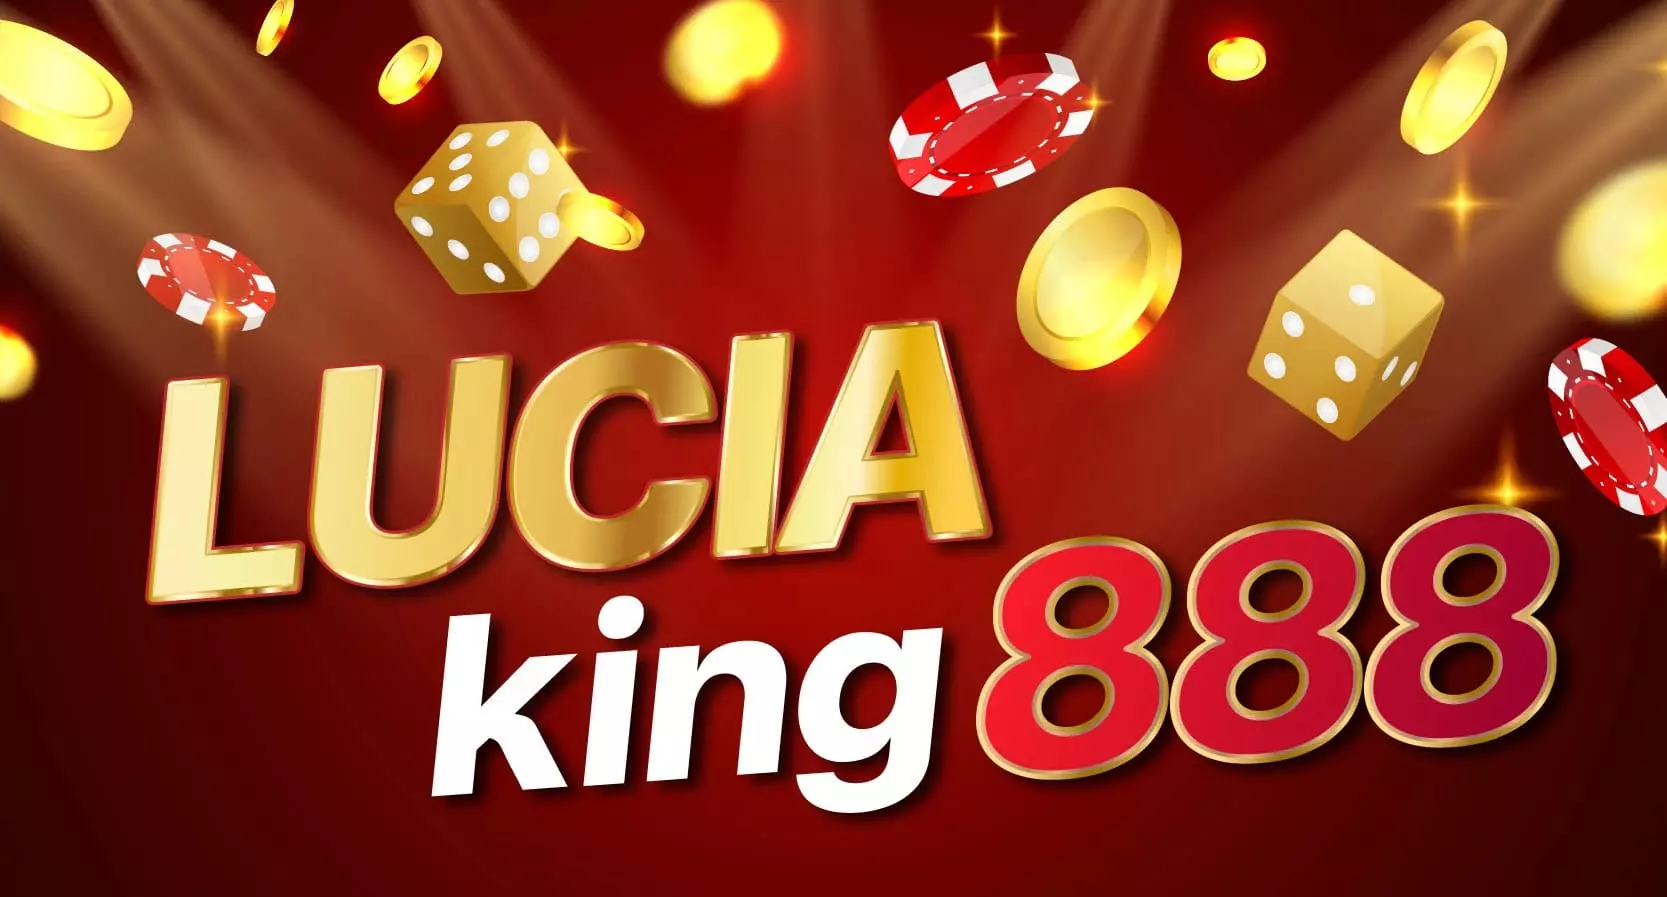 lucia king888 จัดโปรใหม่ทั้งลูกเค้าเก่าและลูกค้าใหม่ รับโบนัส100%